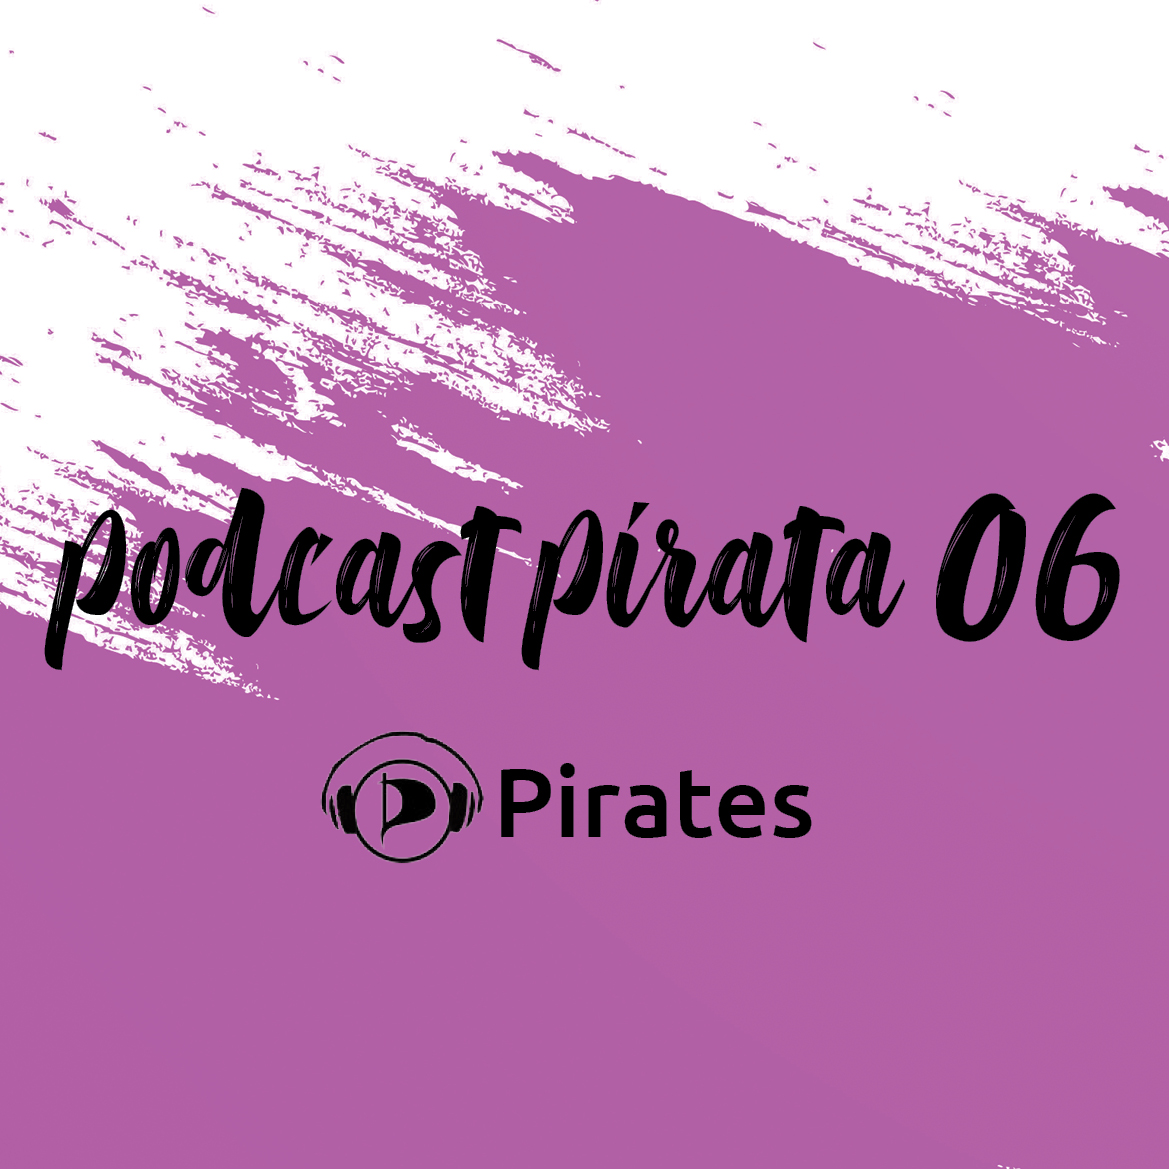 Podcast Pirata 06